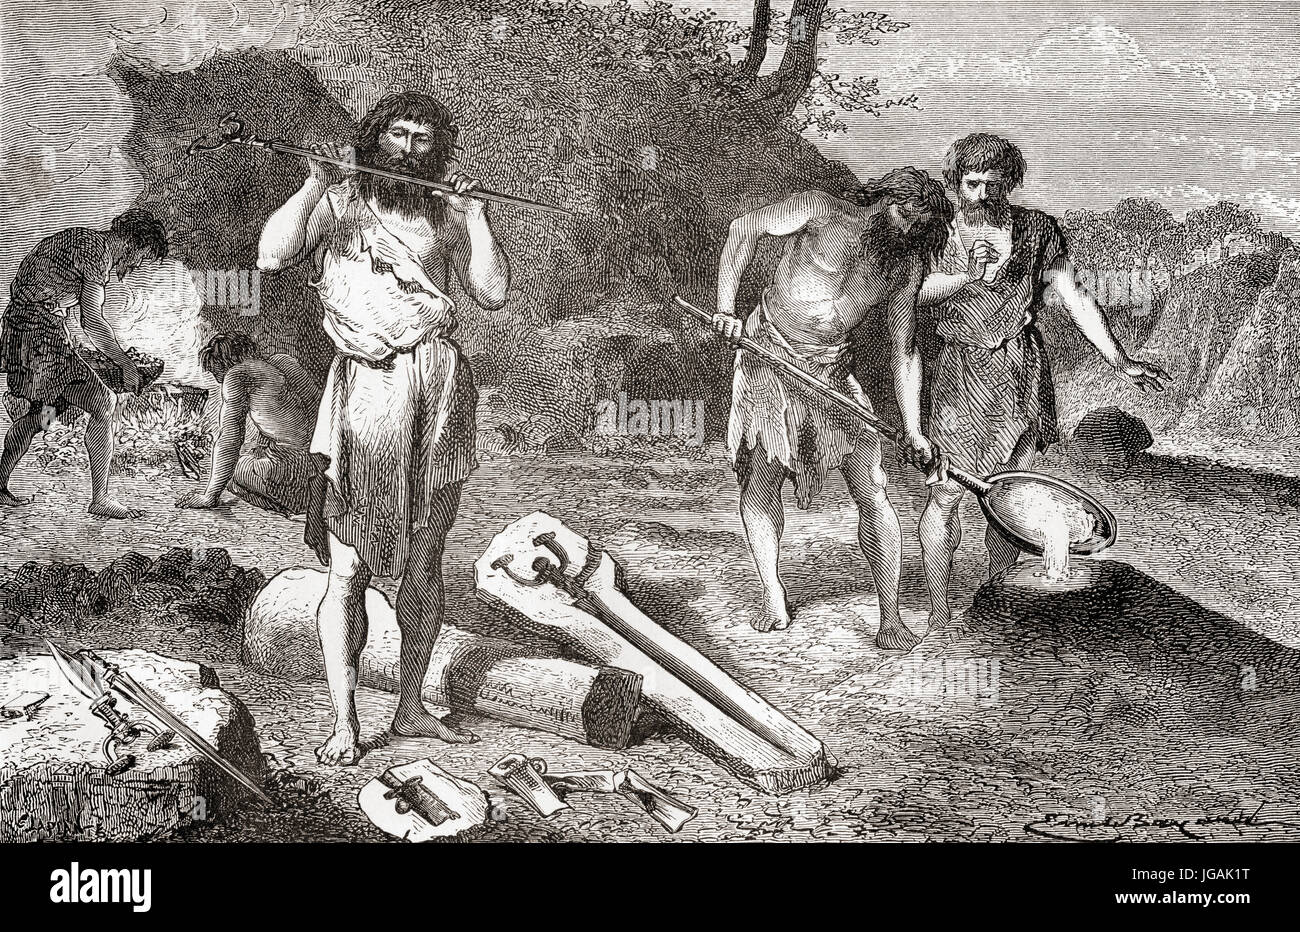 Männer gießen Metall während der Bronzezeit.  L ' Homme Primitif veröffentlichte 1870. Stockfoto